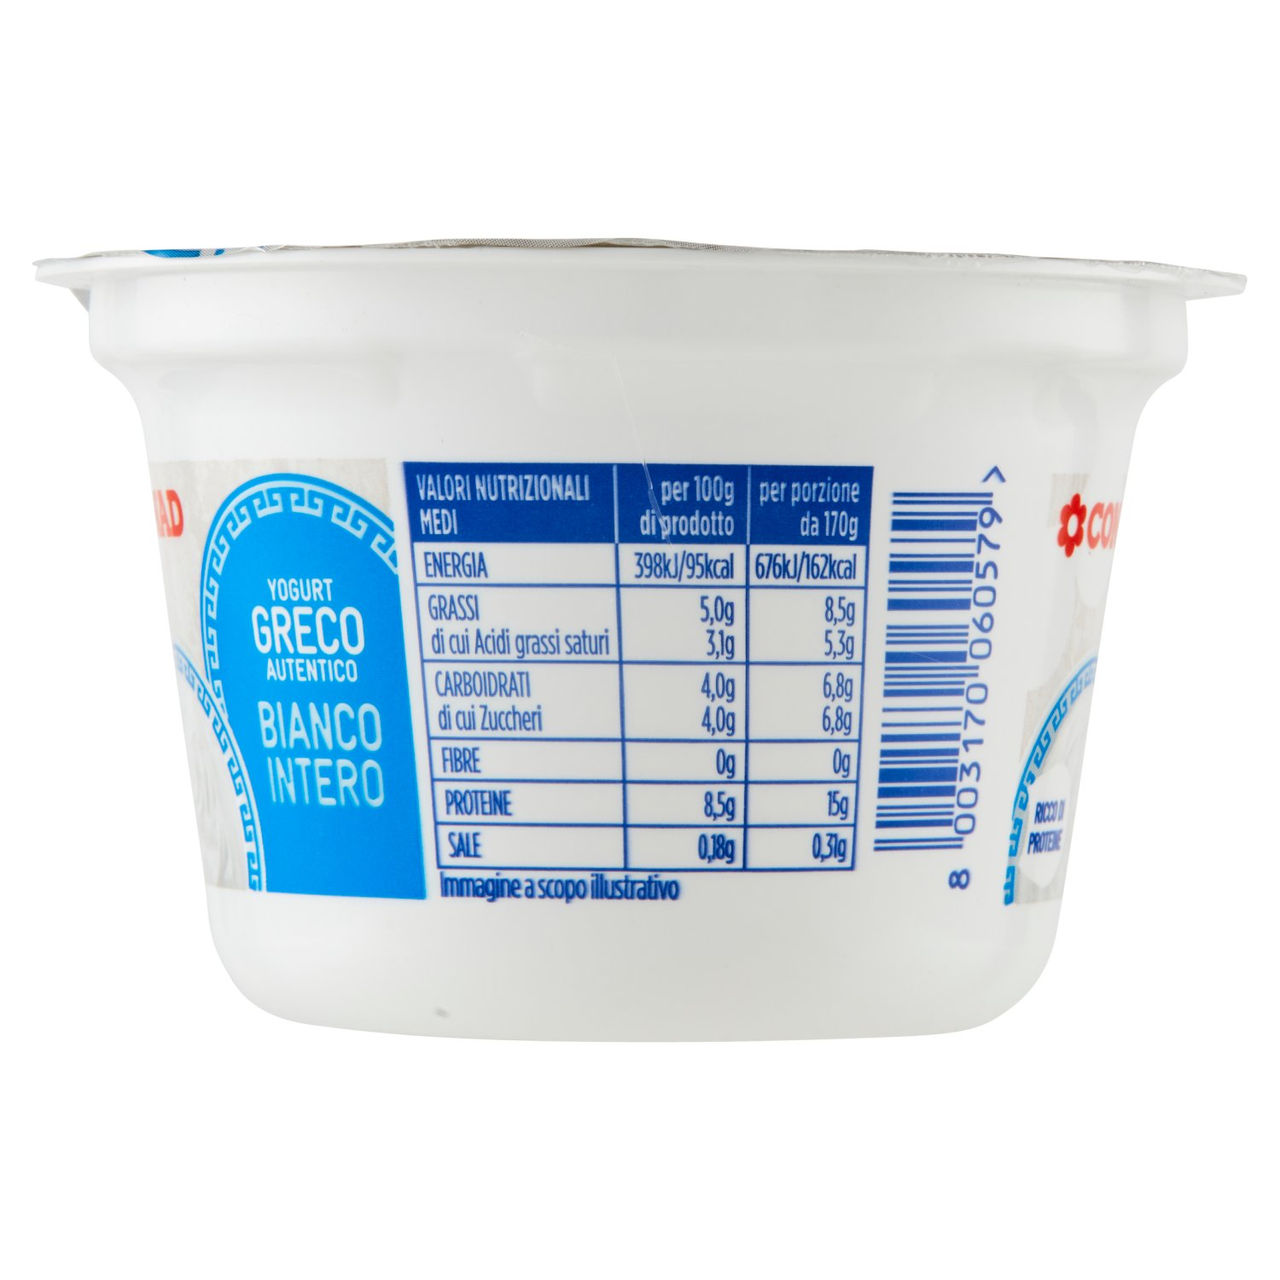 Yogurt Greco Autentico Bianco Intero 170 g Conad